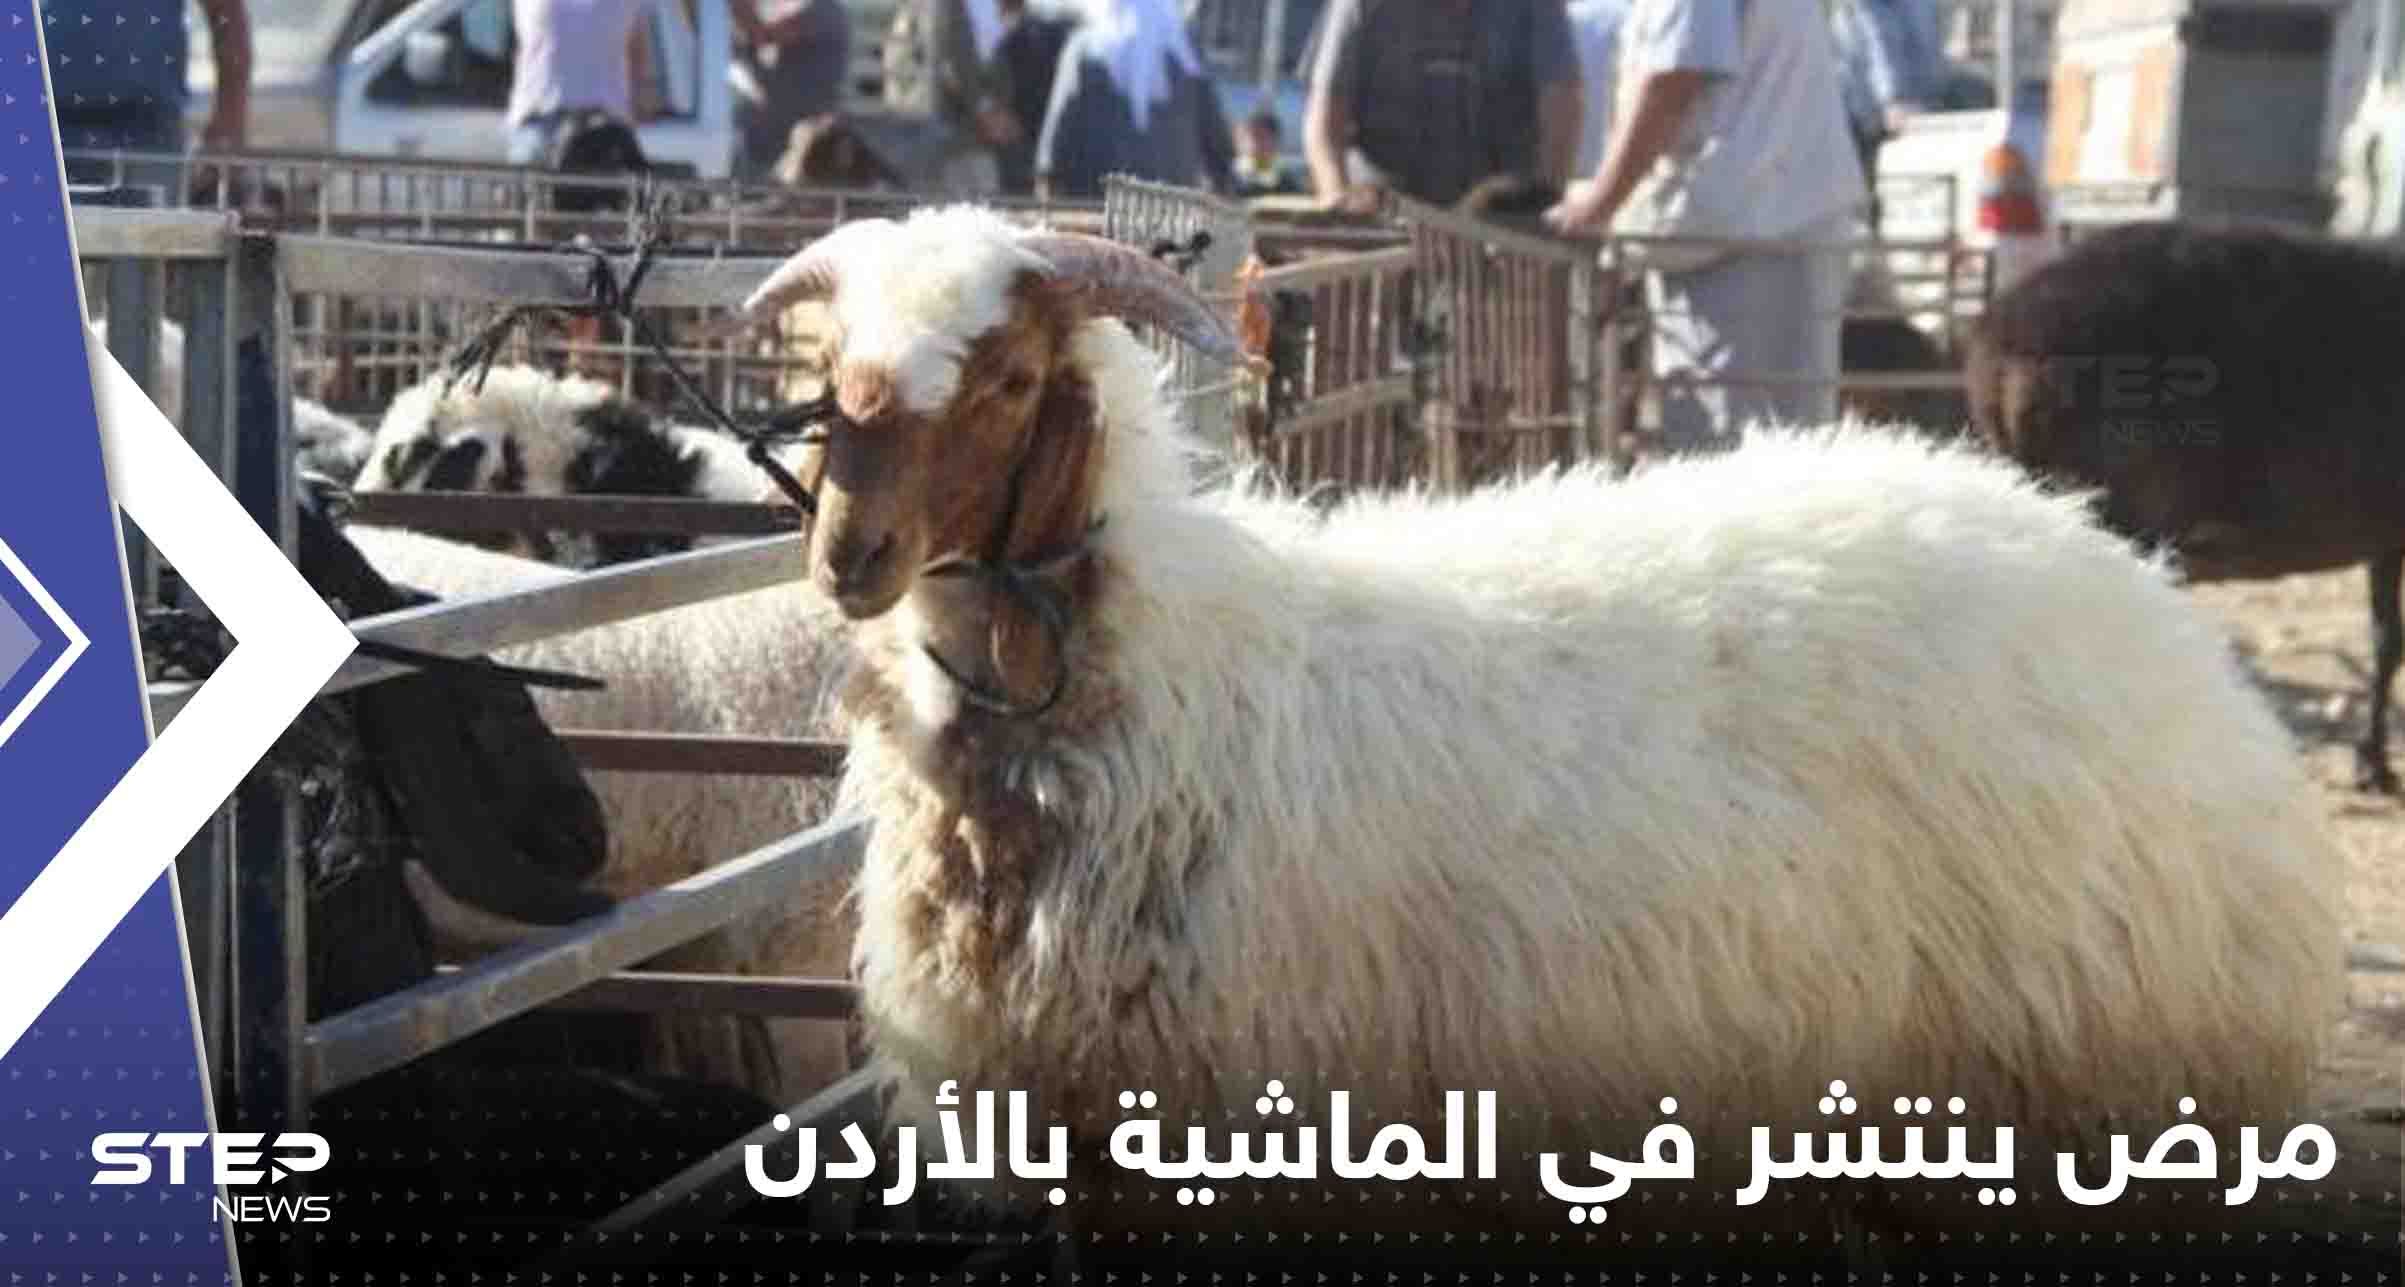 مرض خطير ينتشر في أسواق الماشية بالأردن